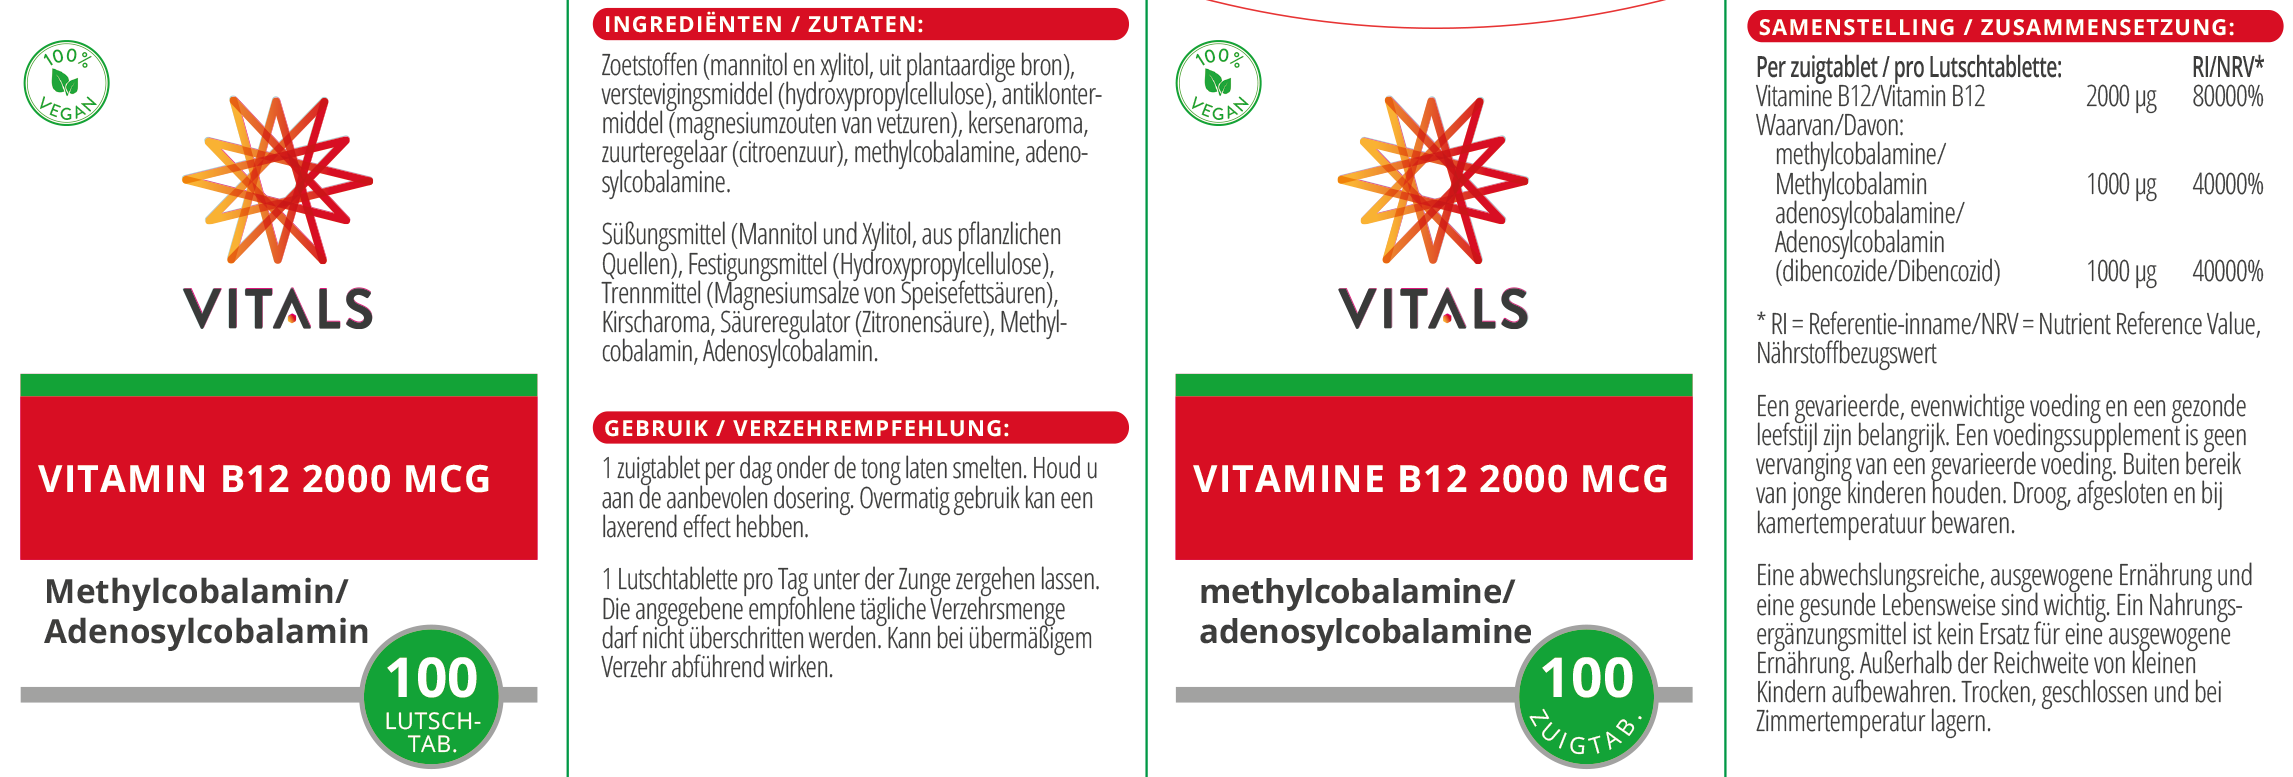 Vitamin B12 2000 mcg